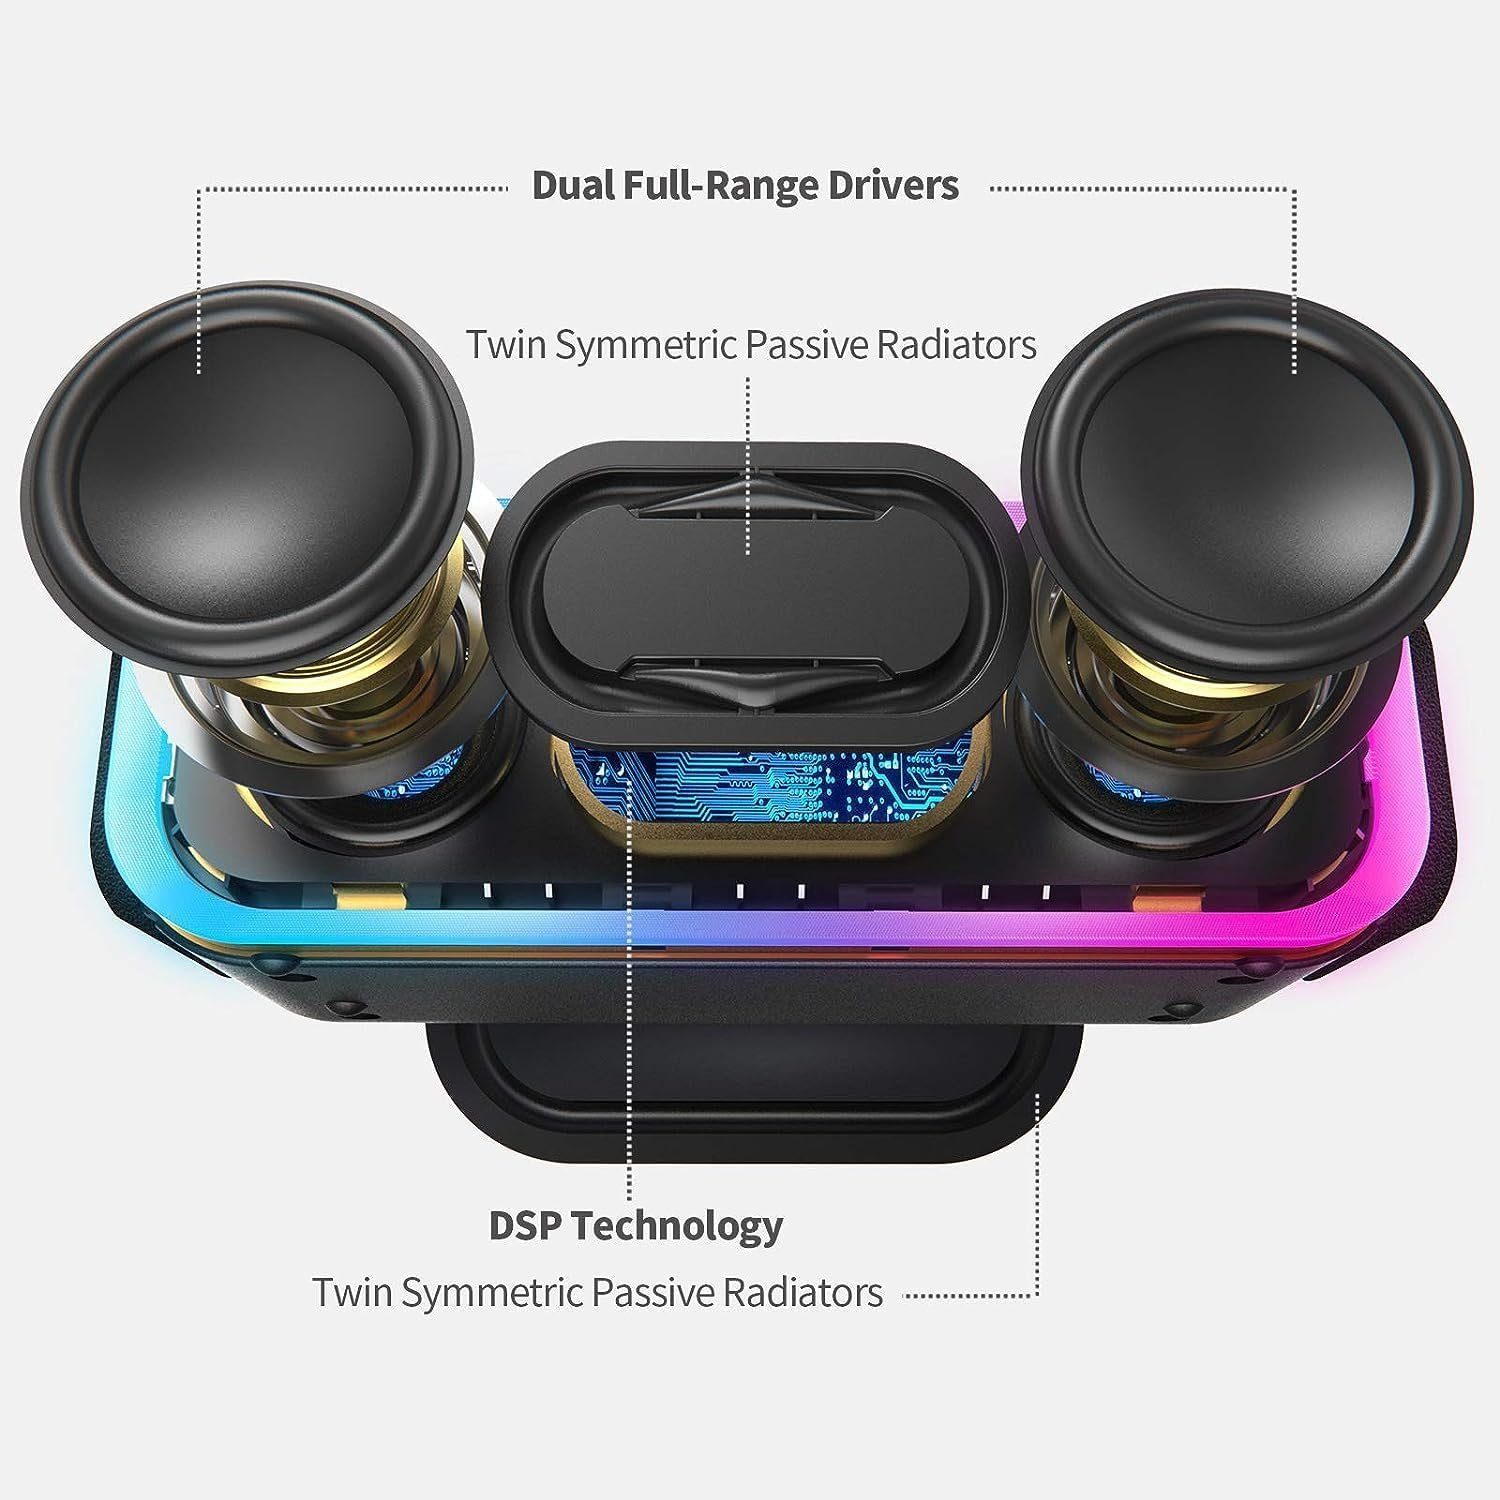 Stereo-Pairing, Musikbox Lichtern, Stereo DOSS 24 W, Std) Wasserdicht, IPX5 Wireless (Bluetooth, Bluetooth Lautsprecher 15